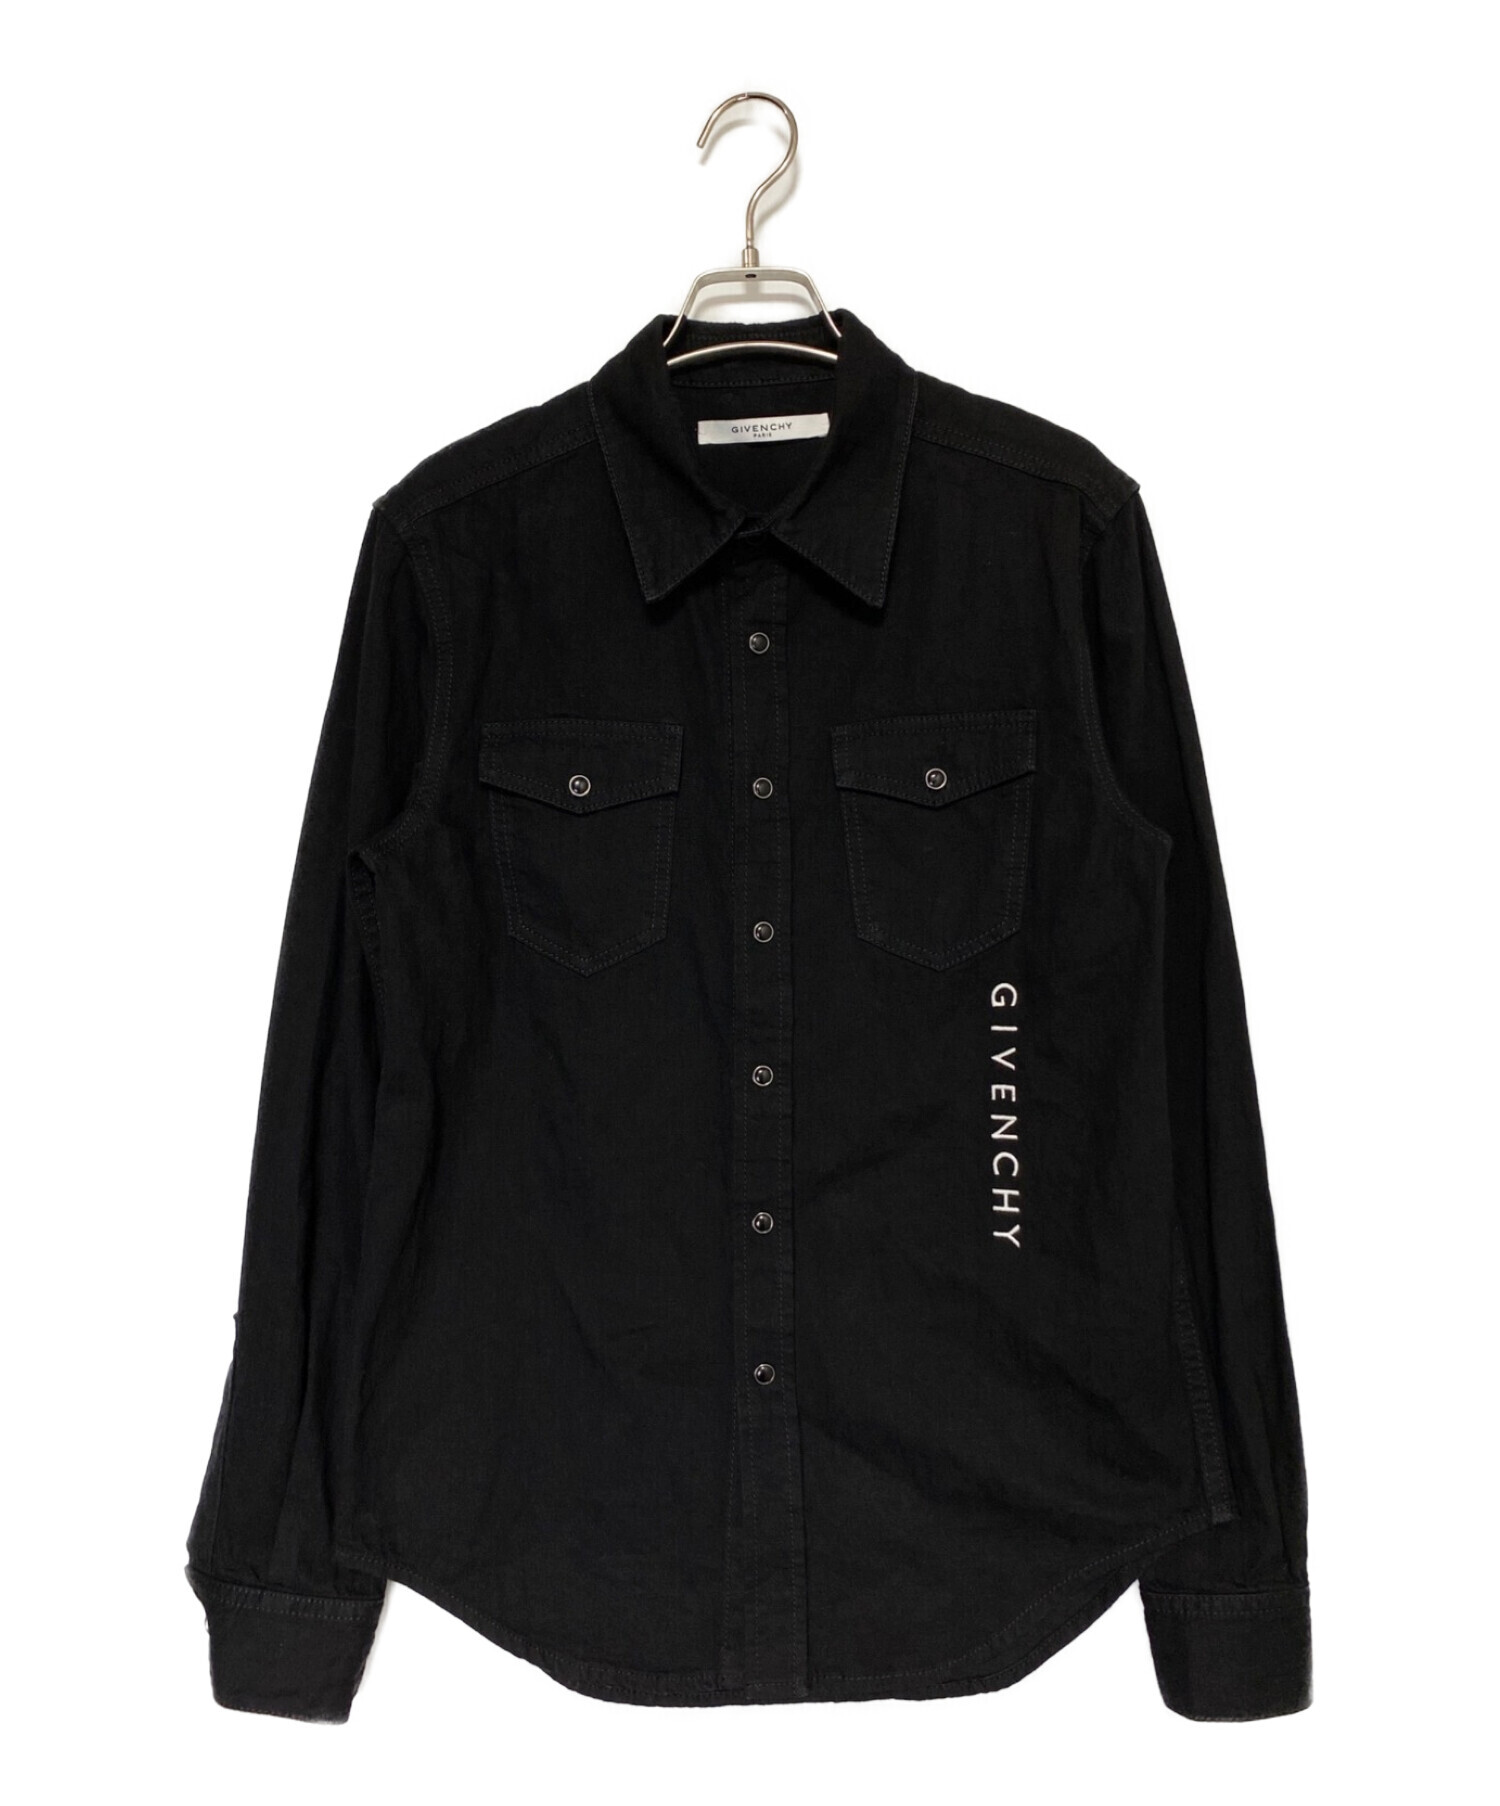 GIVENCHY (ジバンシィ) スナップボタンシャツ ブラック サイズ:S